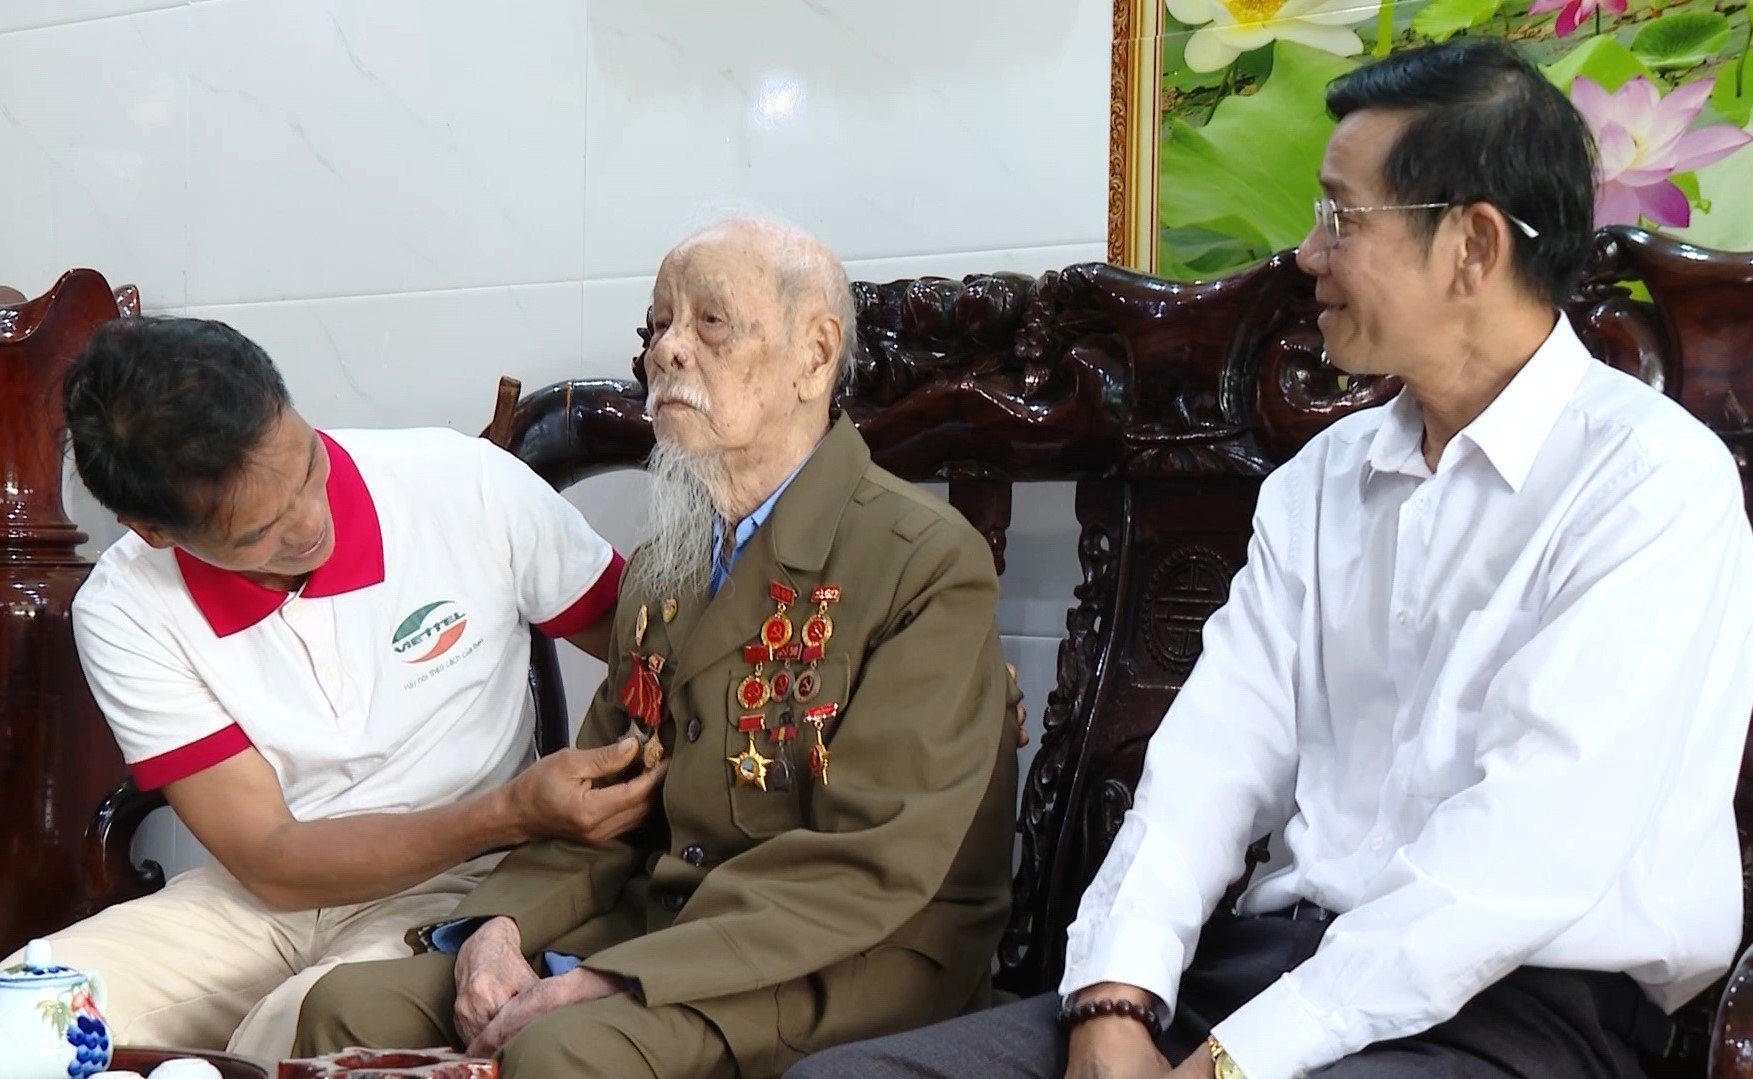 Cựu chiến binh Điện Biên Phủ kể chuyện vác đạn pháo vào trận địa- Ảnh 1.